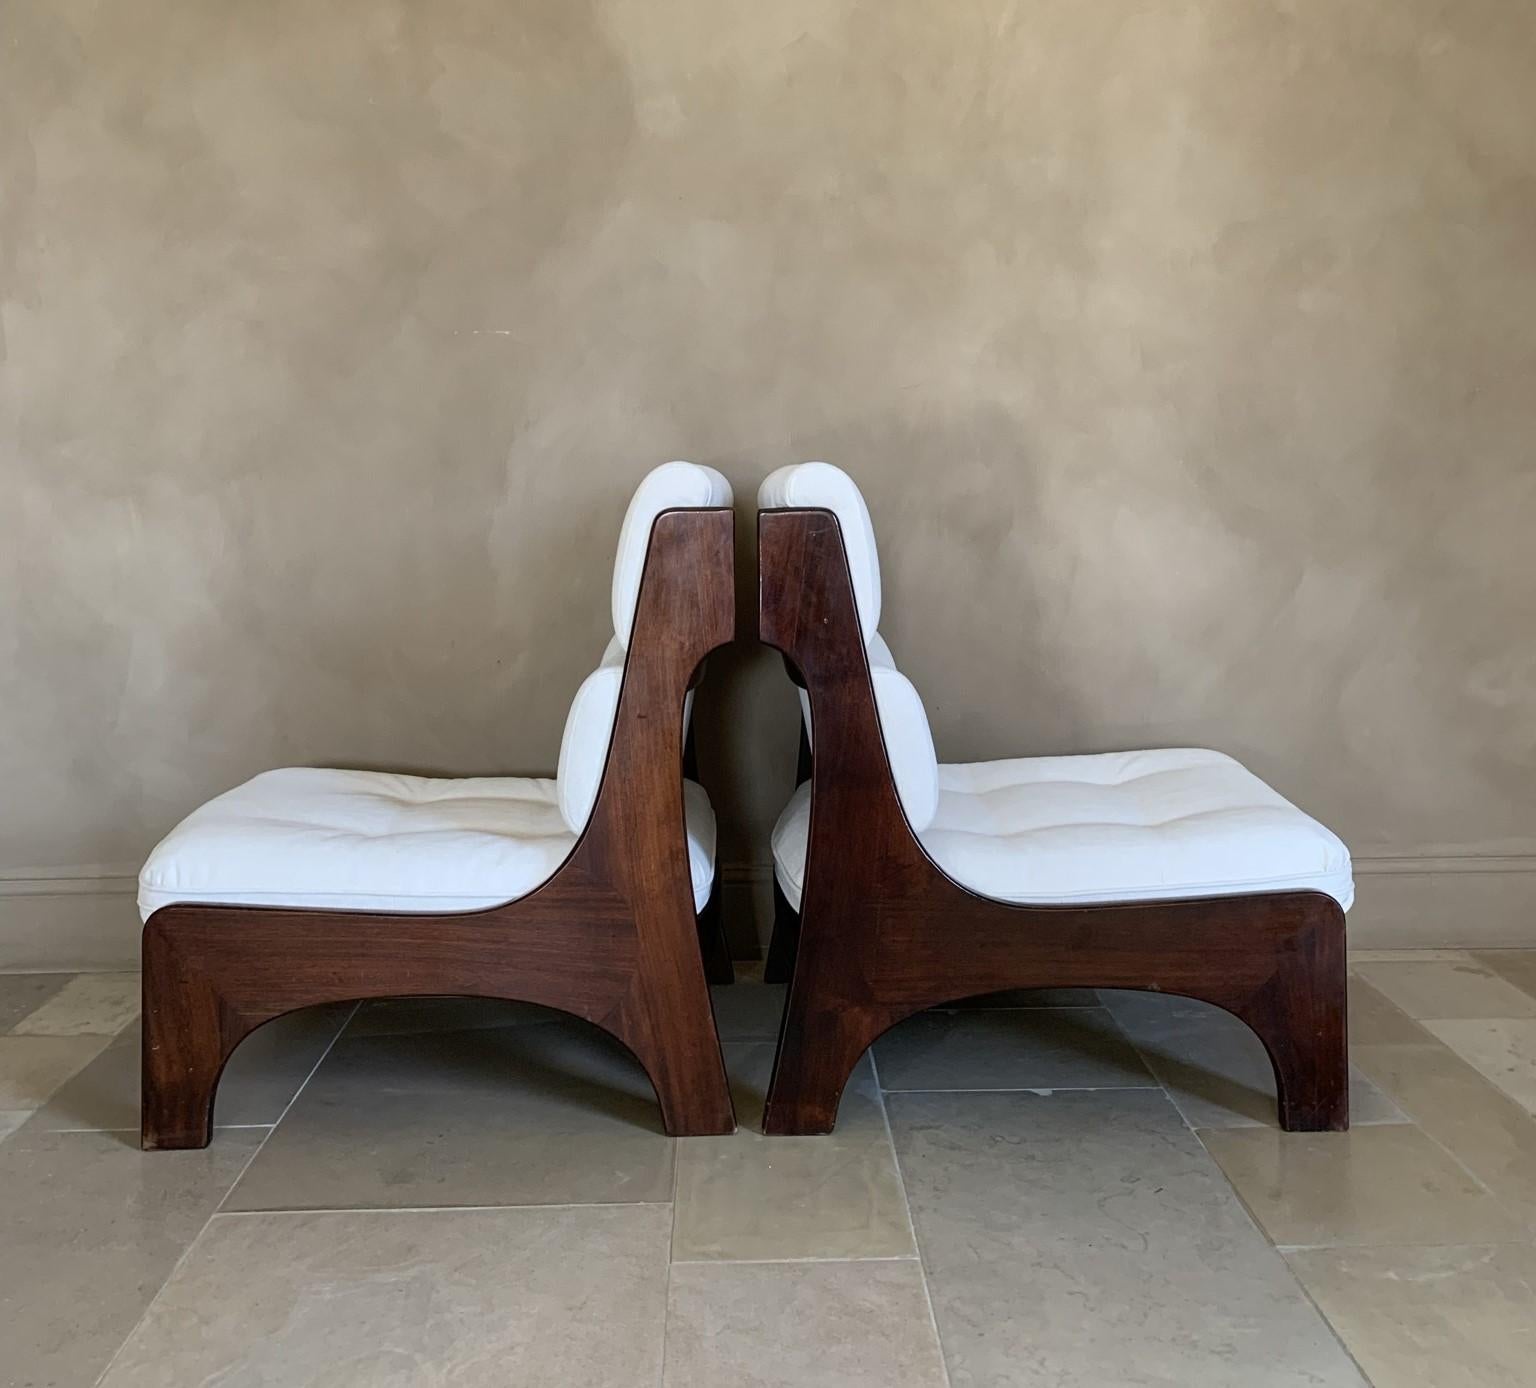 Ein hochwertiges Paar italienischer Loungesessel, ca. 1965. Von Hand aus massivem Palisanderholz zusammengesetzt, strahlen diese Stühle stilvolle italienische Handwerkskunst und Design aus. Sie sind in einem subtilen kubistischen Stil und mit viel